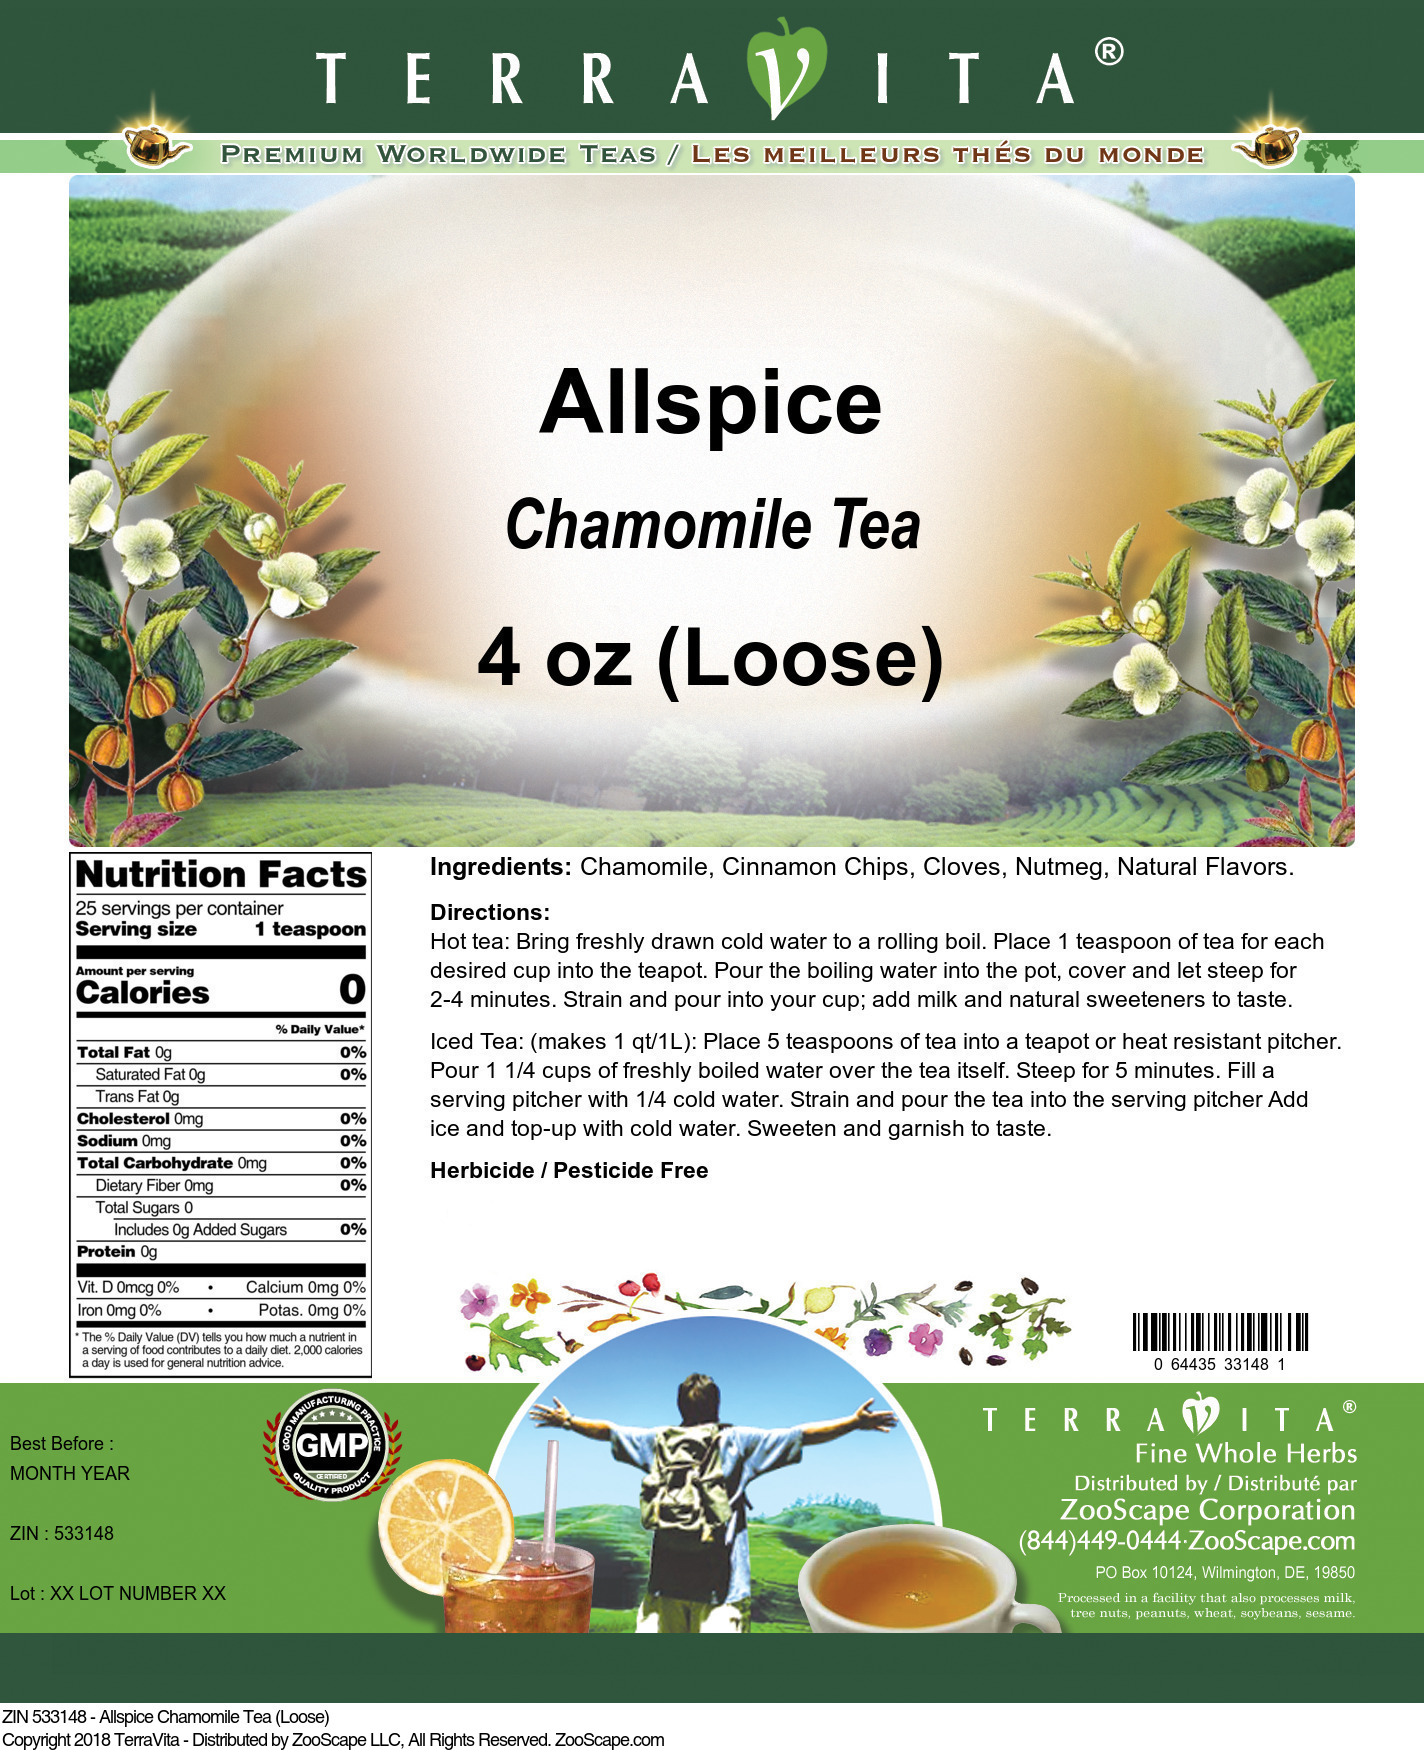 Allspice Chamomile Tea (Loose) - Label